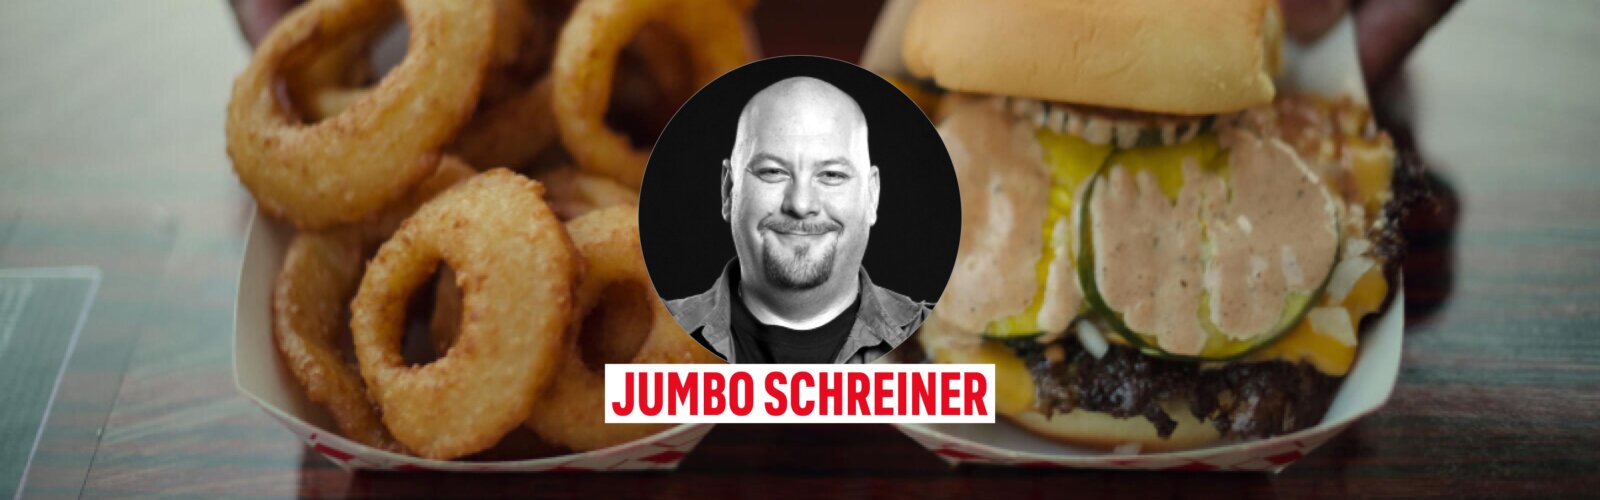 Jumbo Schreiner über Street Food USA.